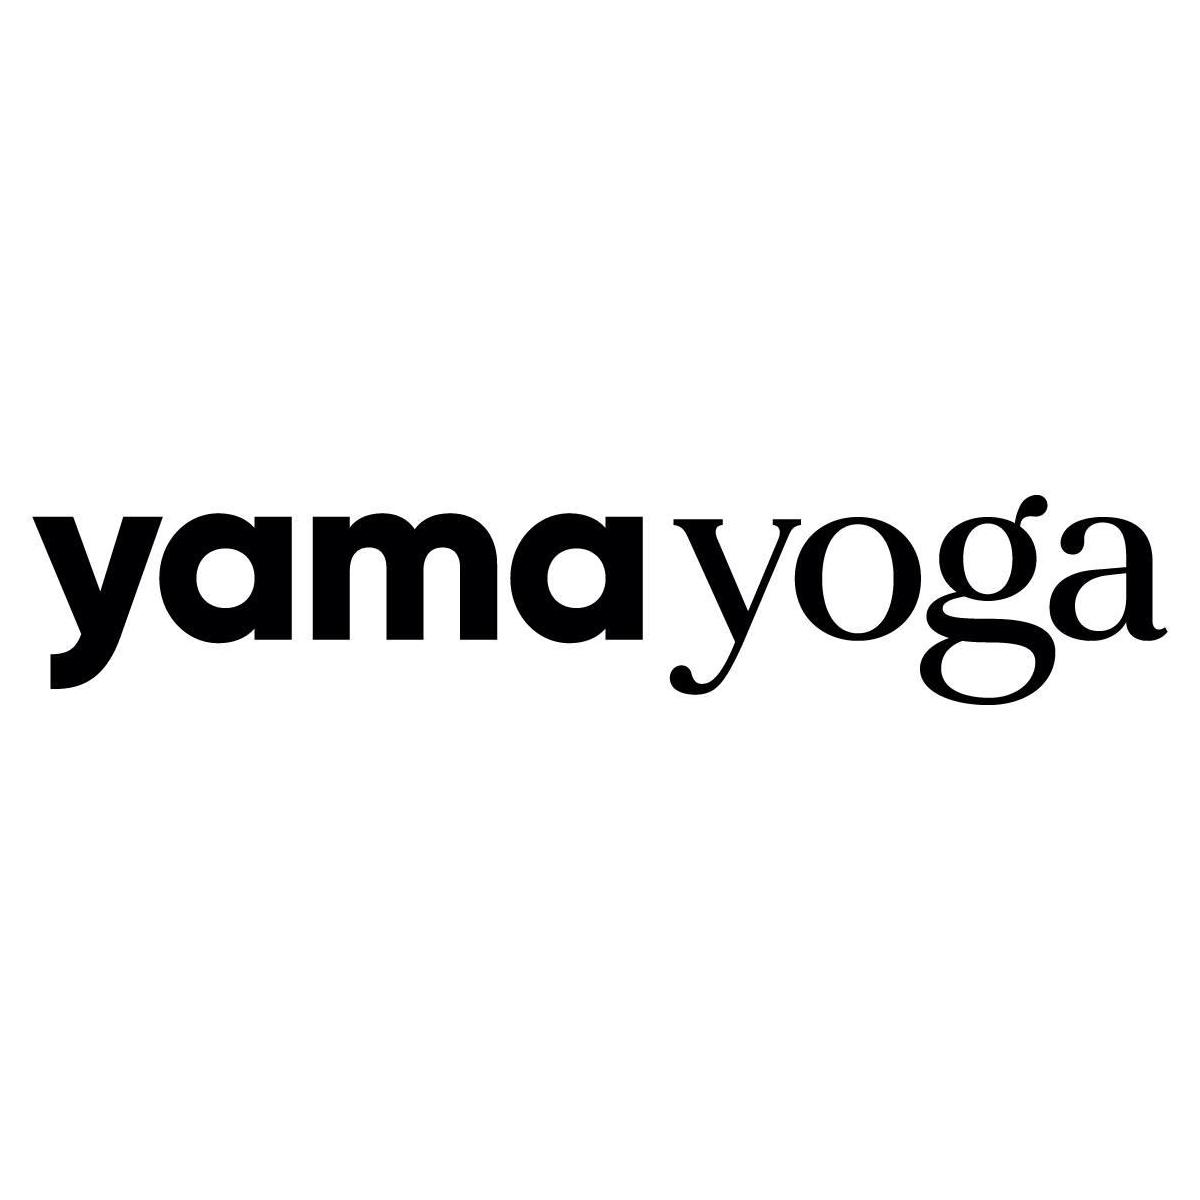 Yama Yoga